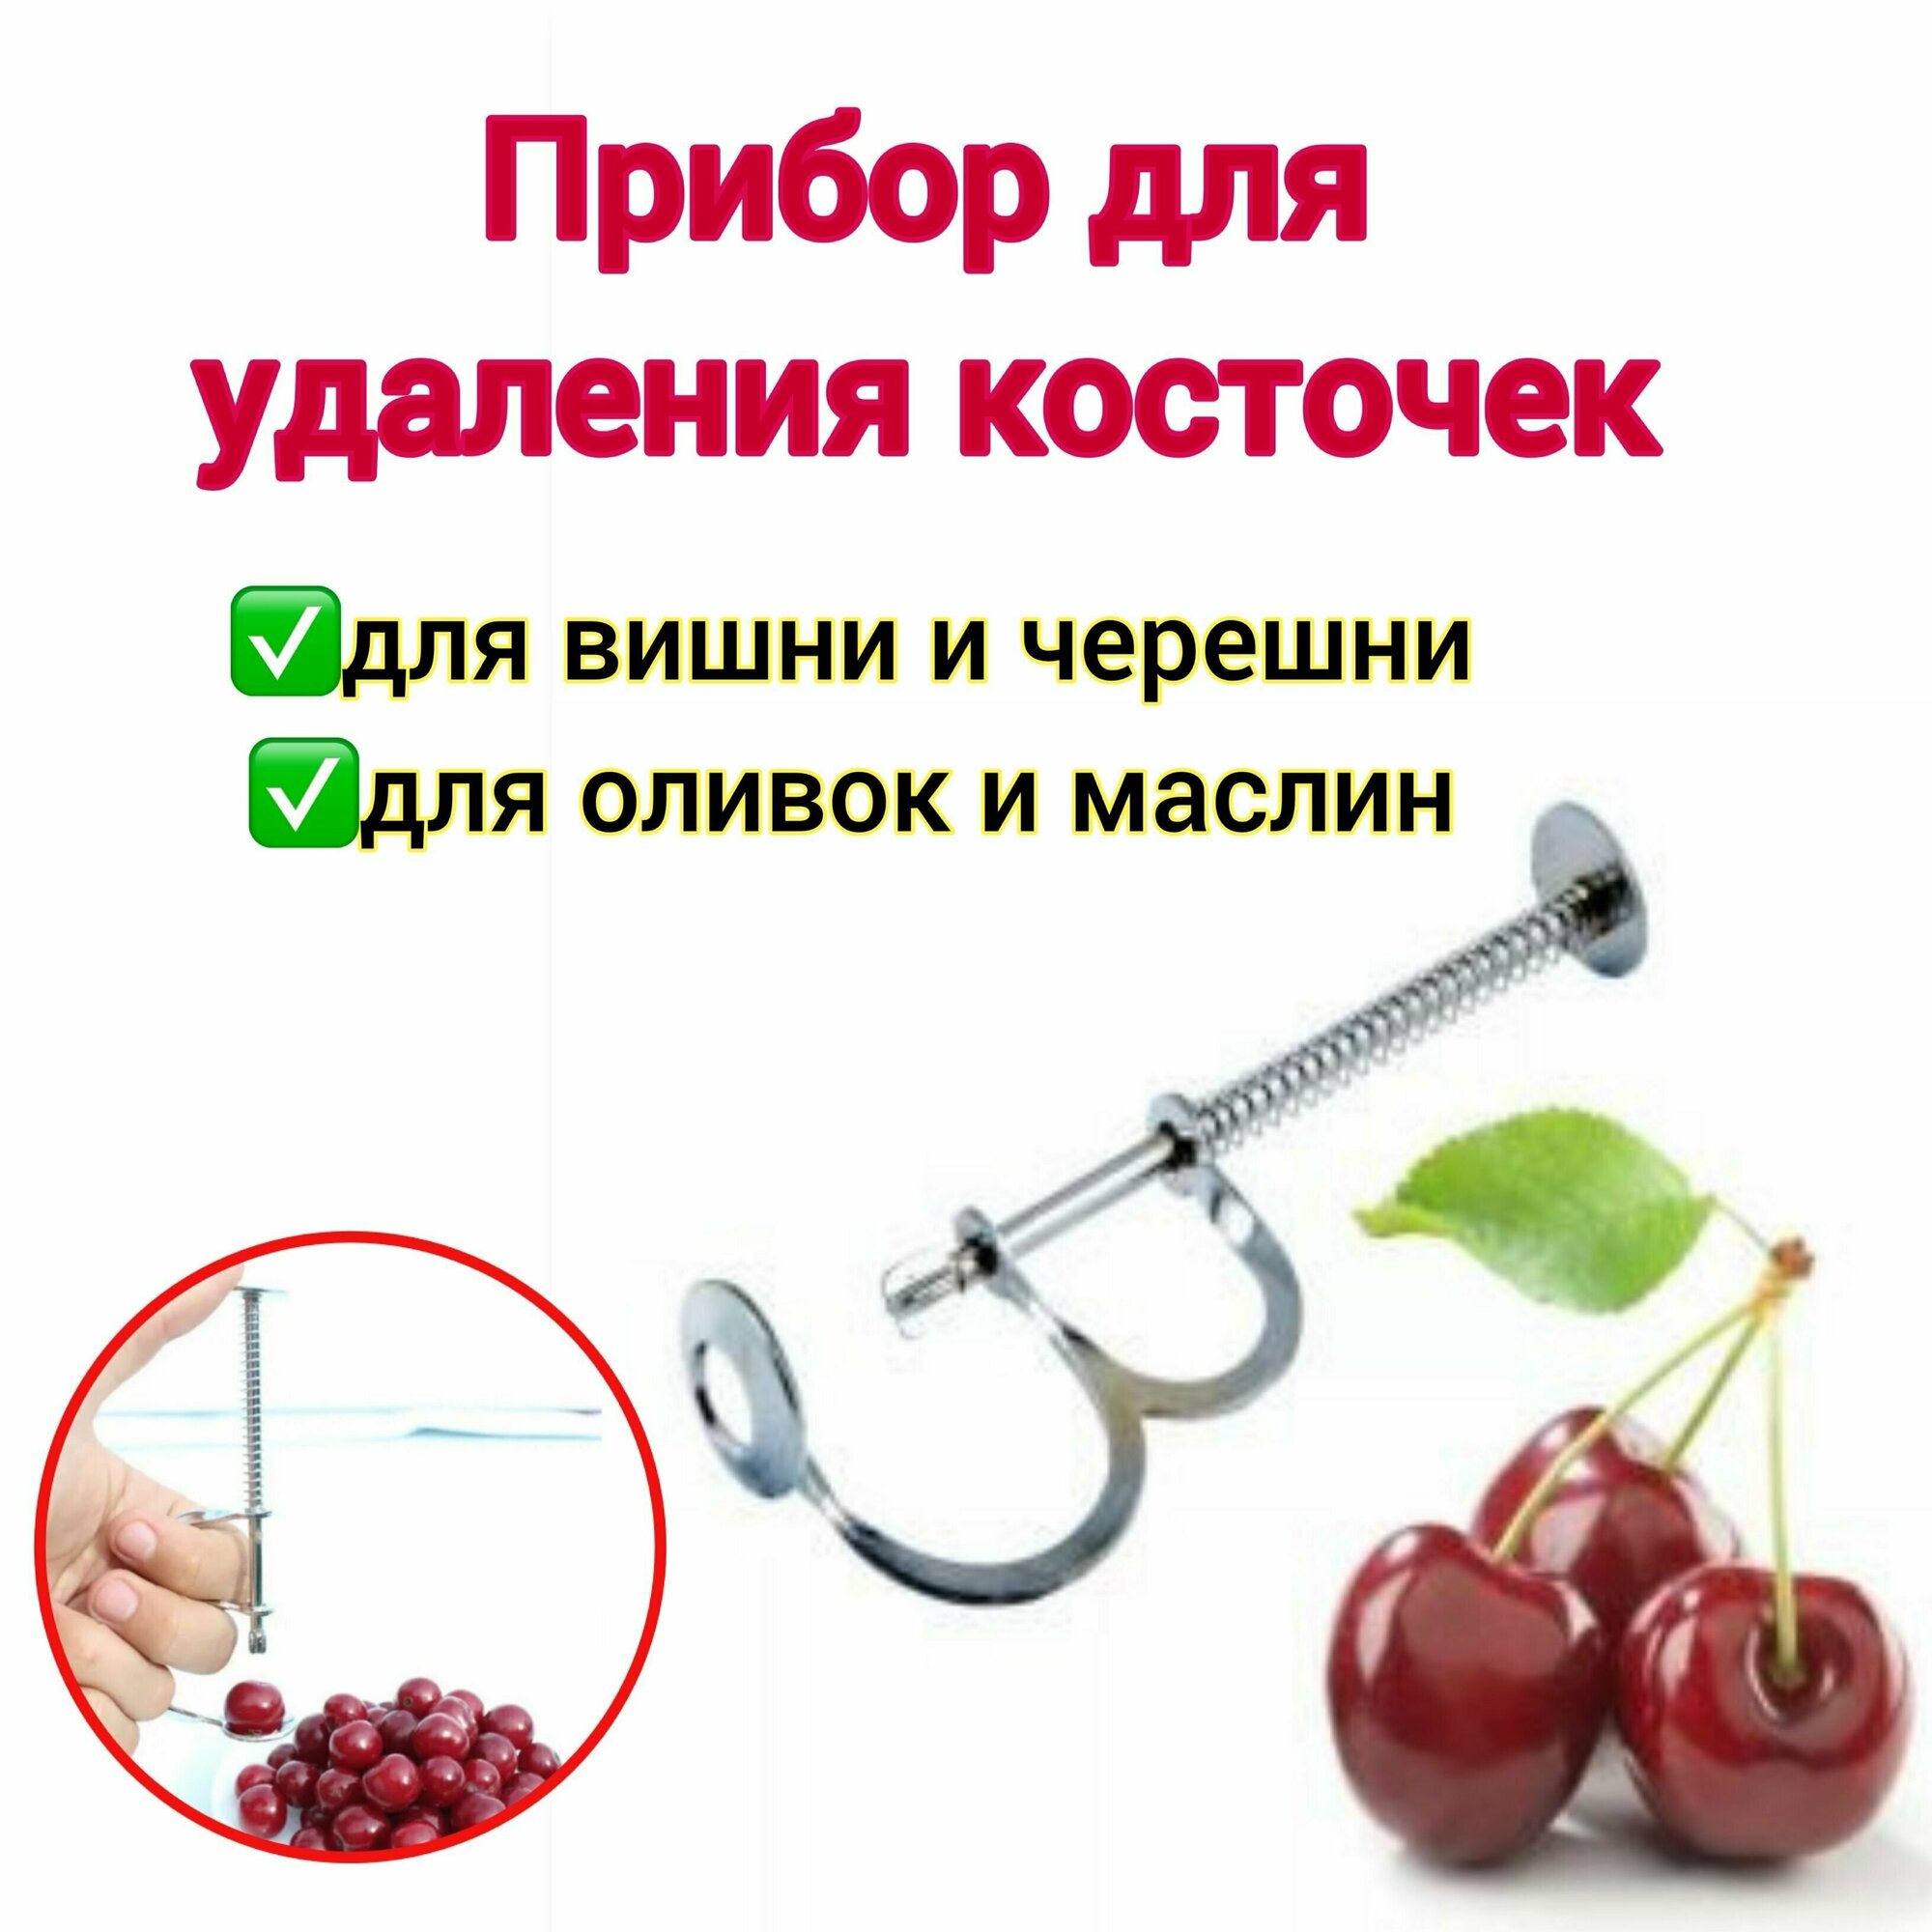 Прибор для удаления косточек из вишни, черешни, оливок, маслин, вишнедавка , удалитель косточек, машинка для удаления косточек